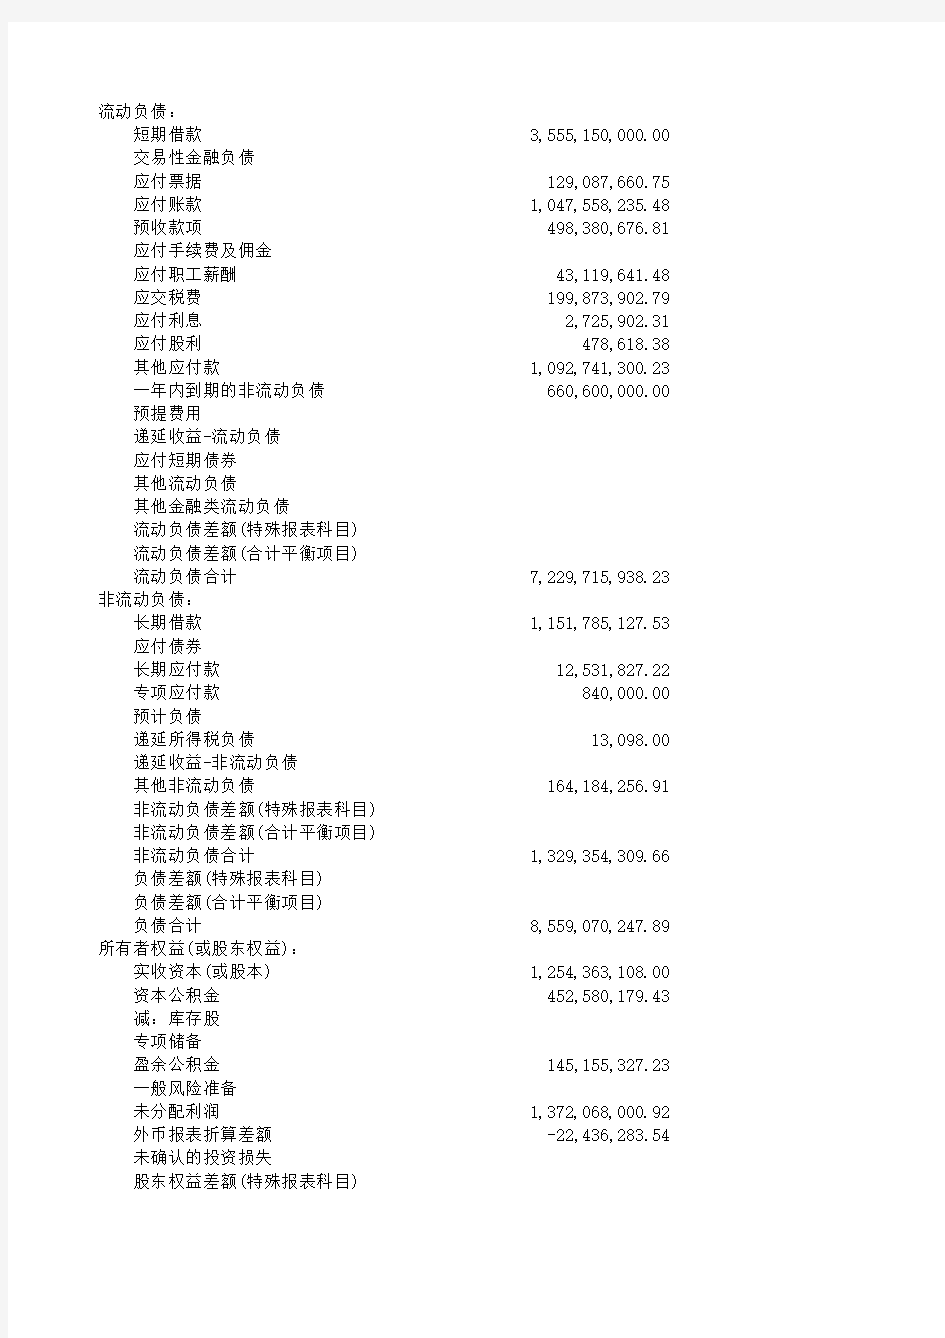 000009 中国宝安六张表